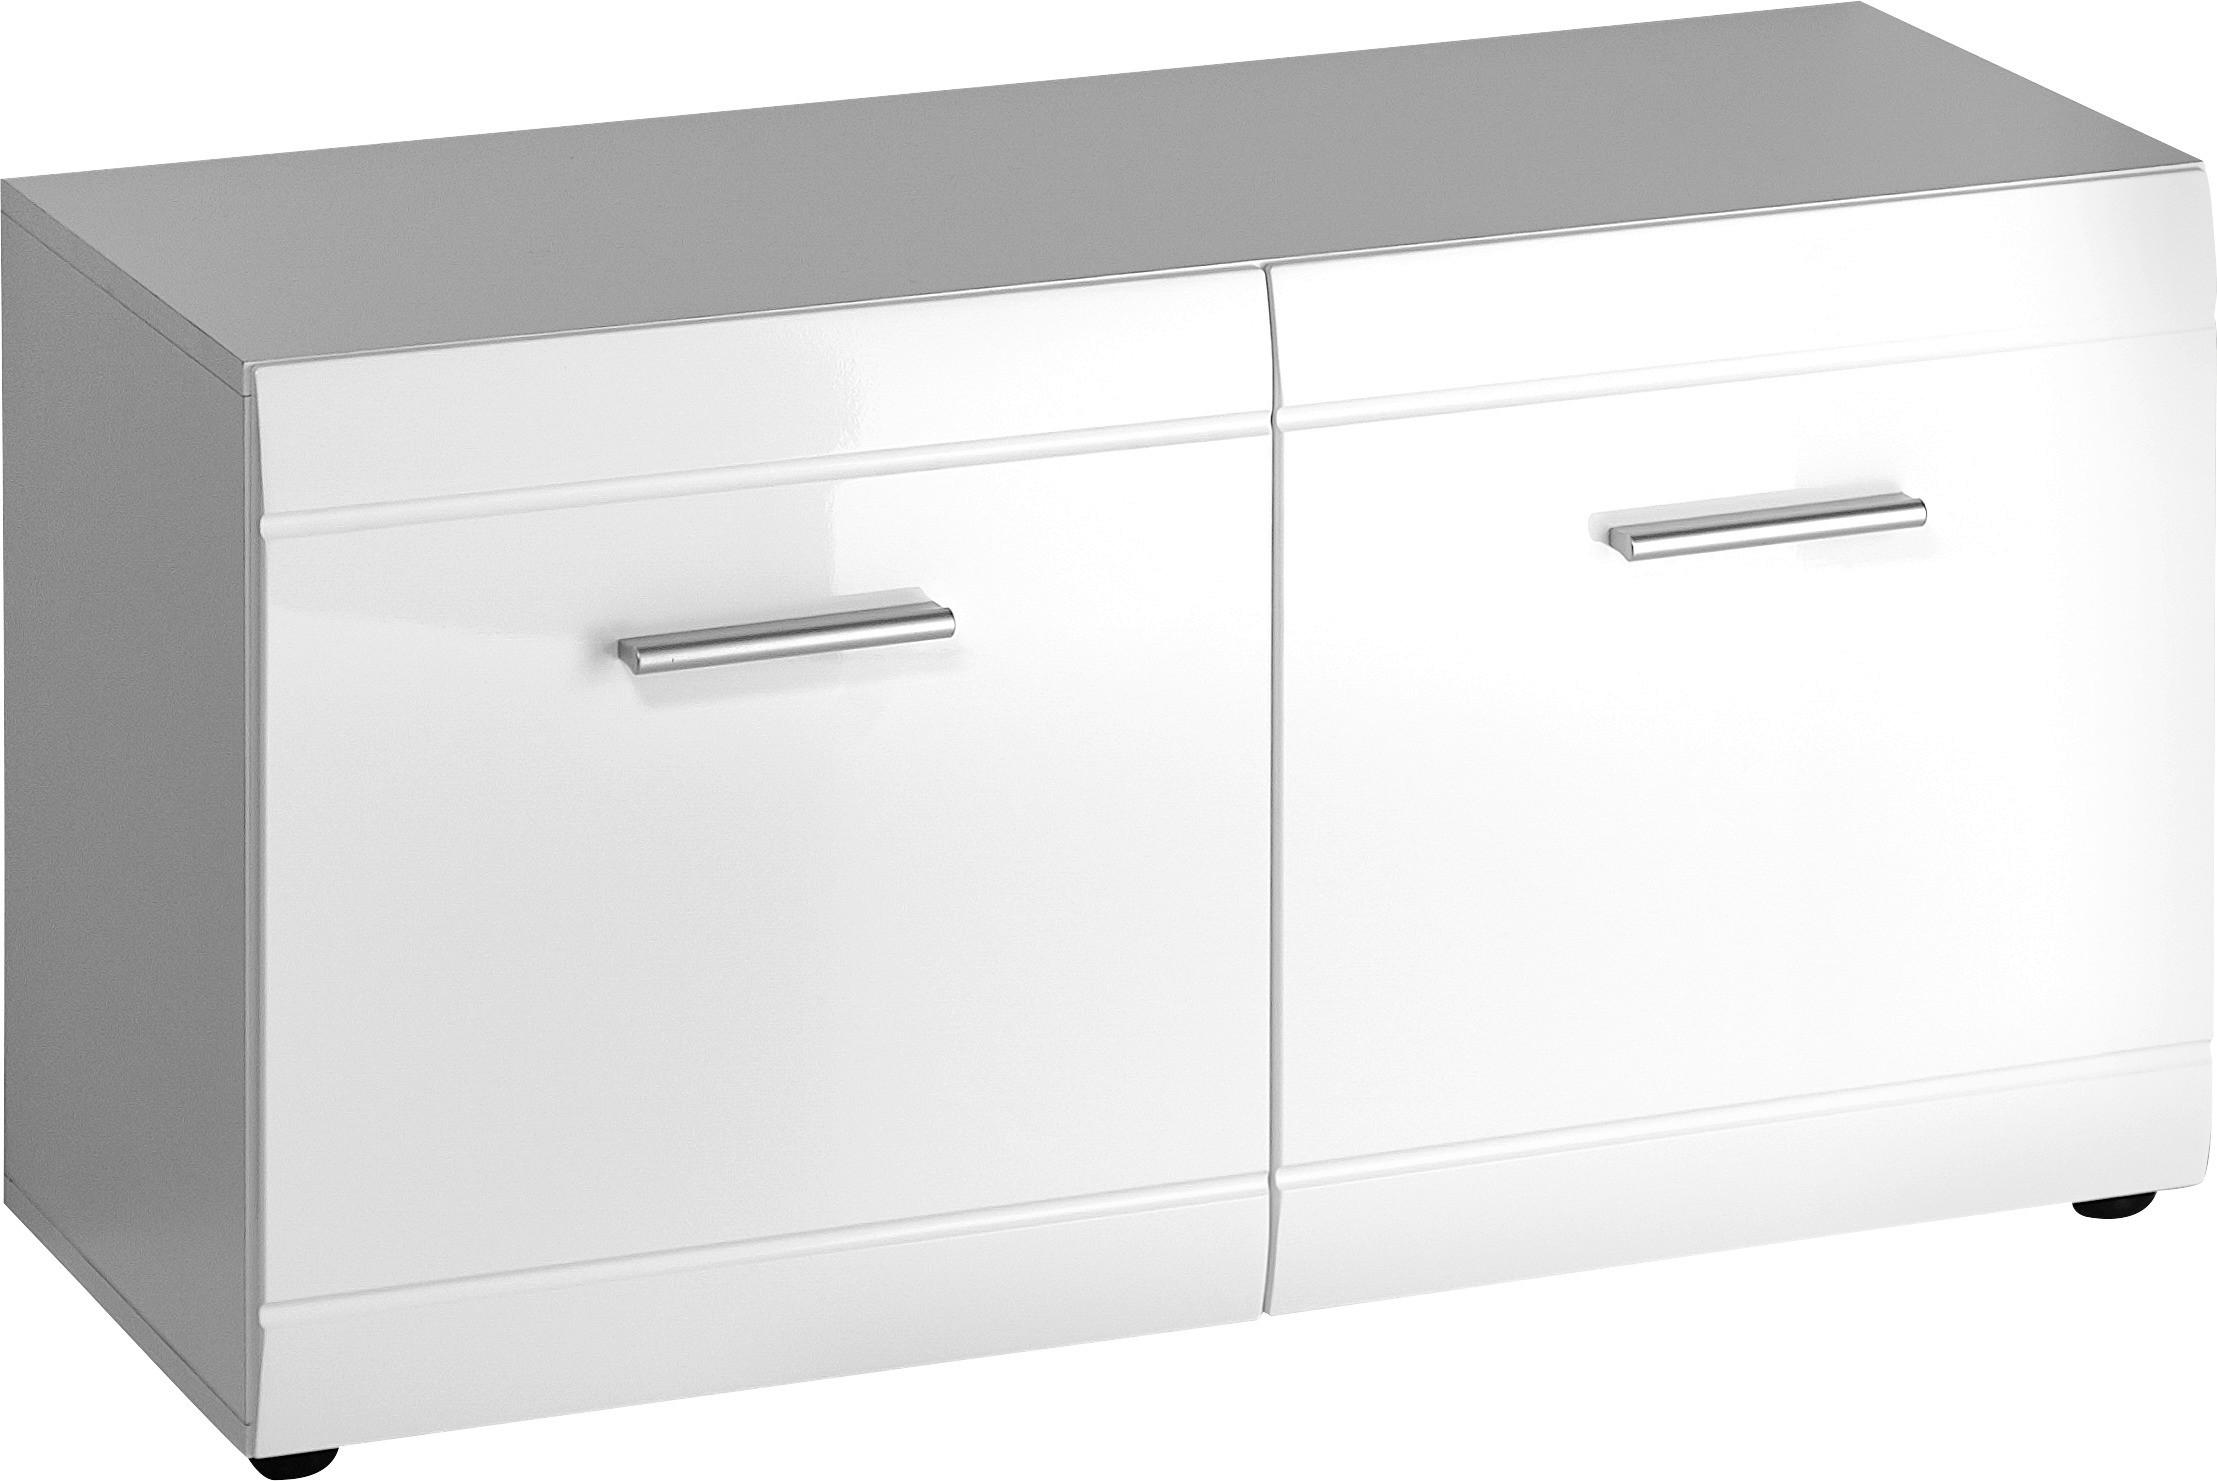 GARDEROBE Weiß  - Weiß, Design (201/200/39cm) - Carryhome